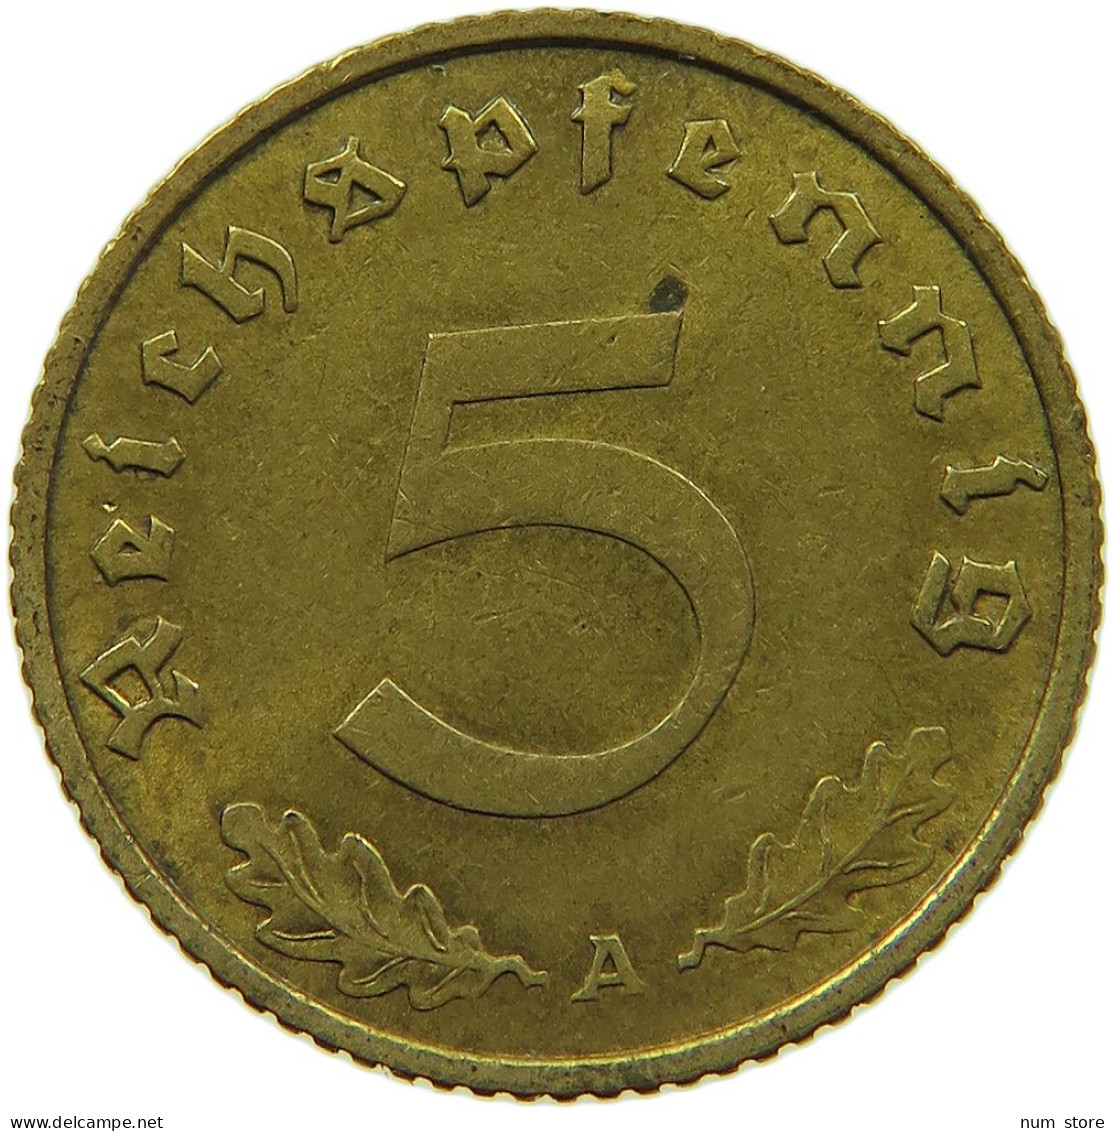 GERMANY 5 REICHSPFENNIG 1938 A #s091 0655 - 5 Reichspfennig